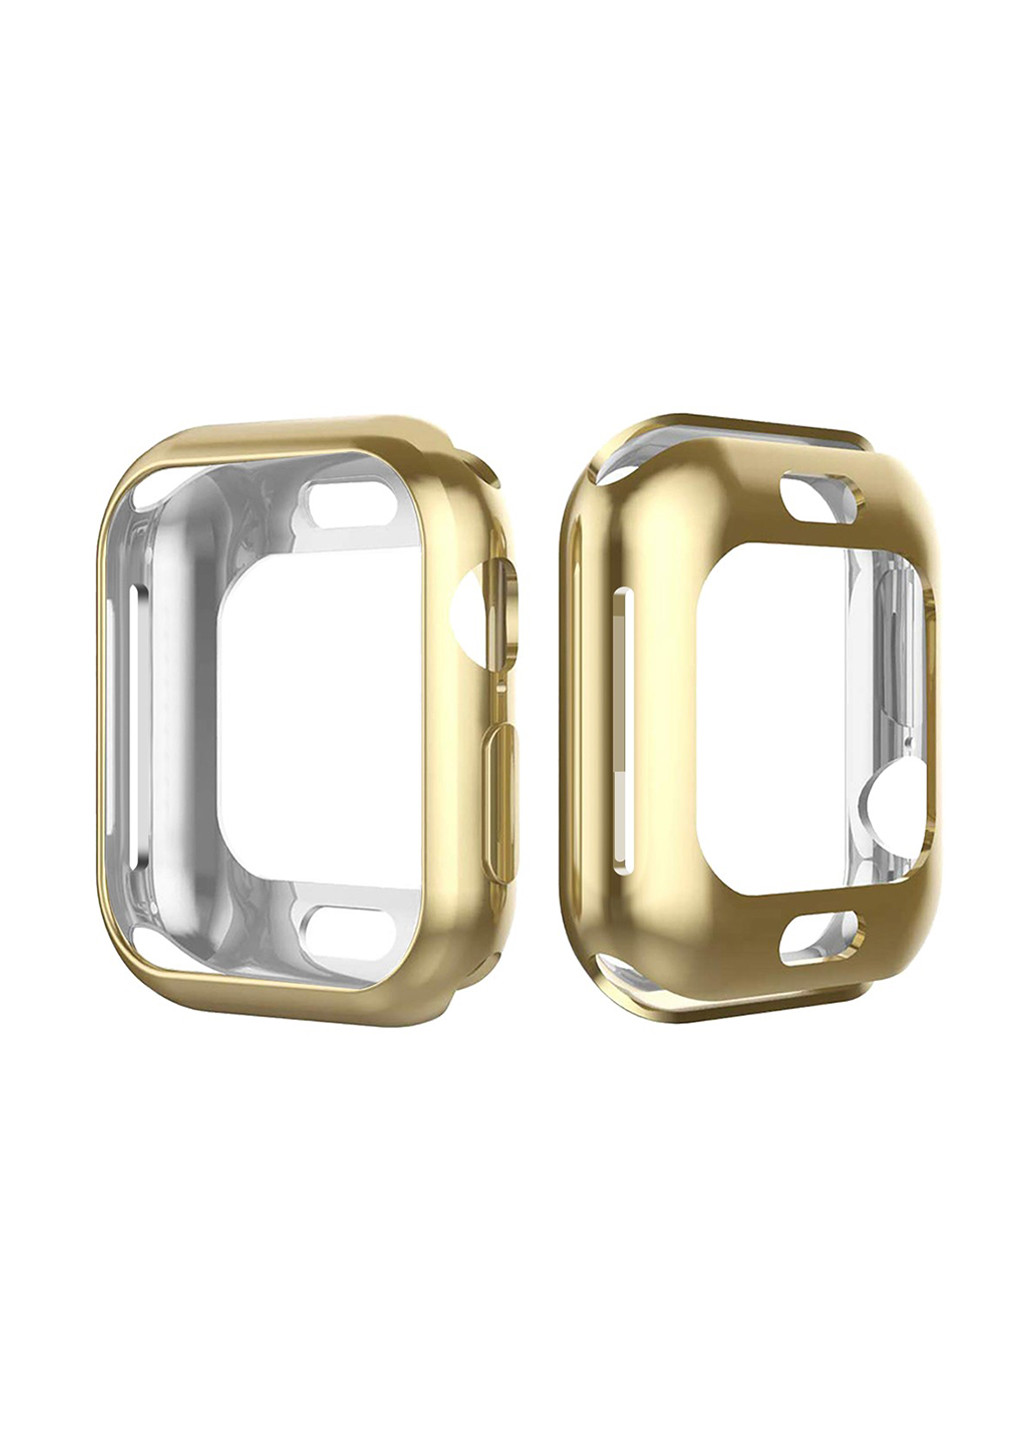 Силиконовый чехол для Apple Watch 38/40 Gold XoKo силиконовый чехол xoko для apple watch 38/40 xoko gold (143704644)